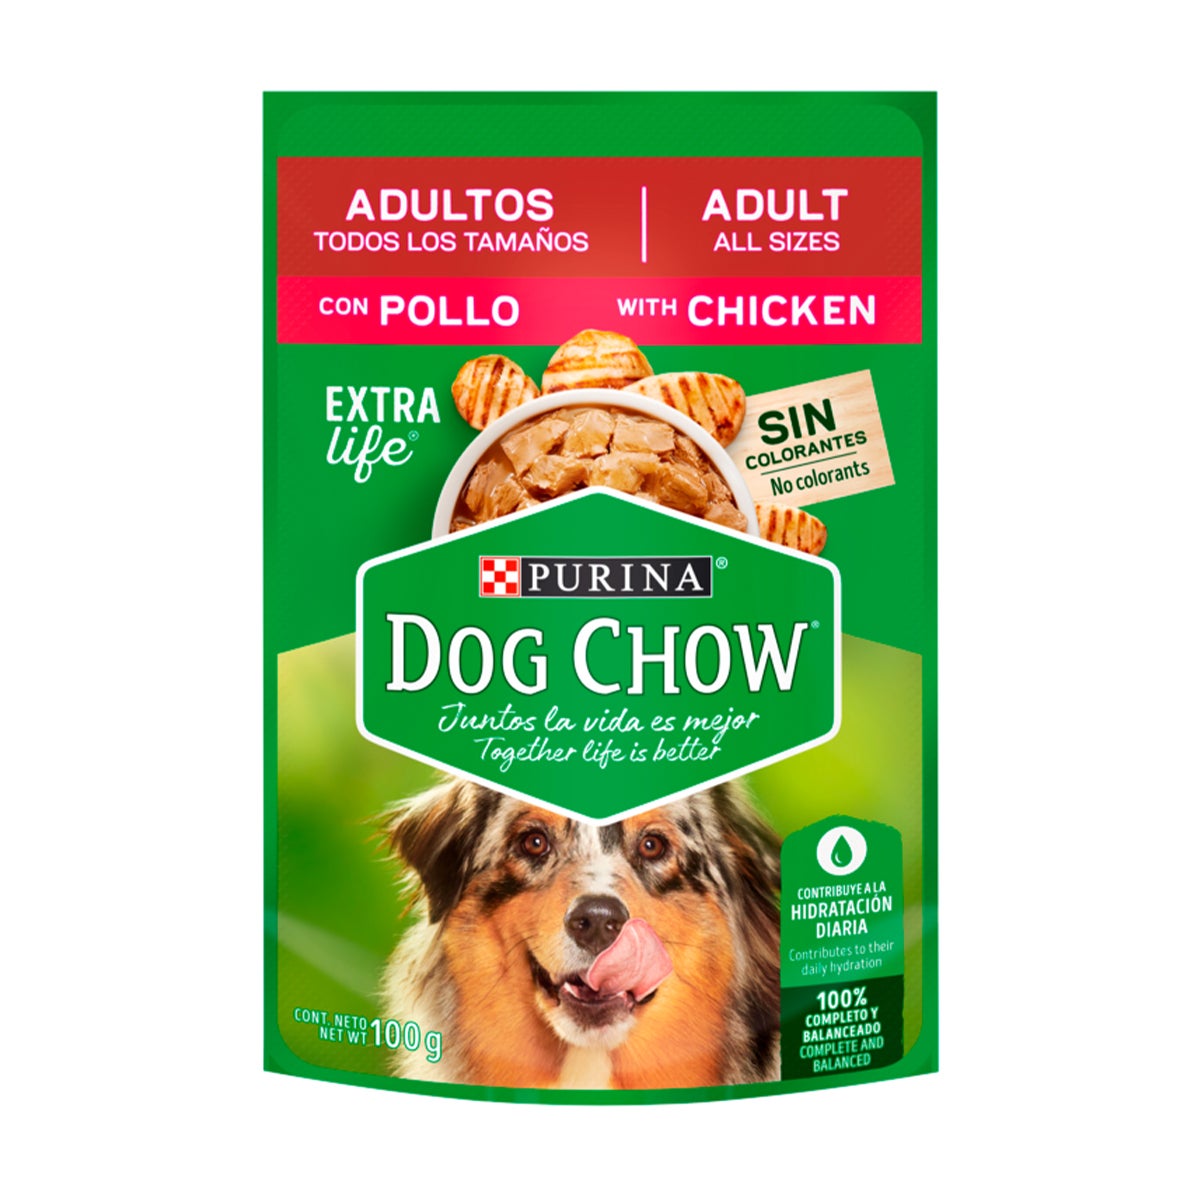 purina-dog-chow-alimento-h%C3%BAmedo-adultos-todos-los-tama%C3%B1os-con-pollo.jpg